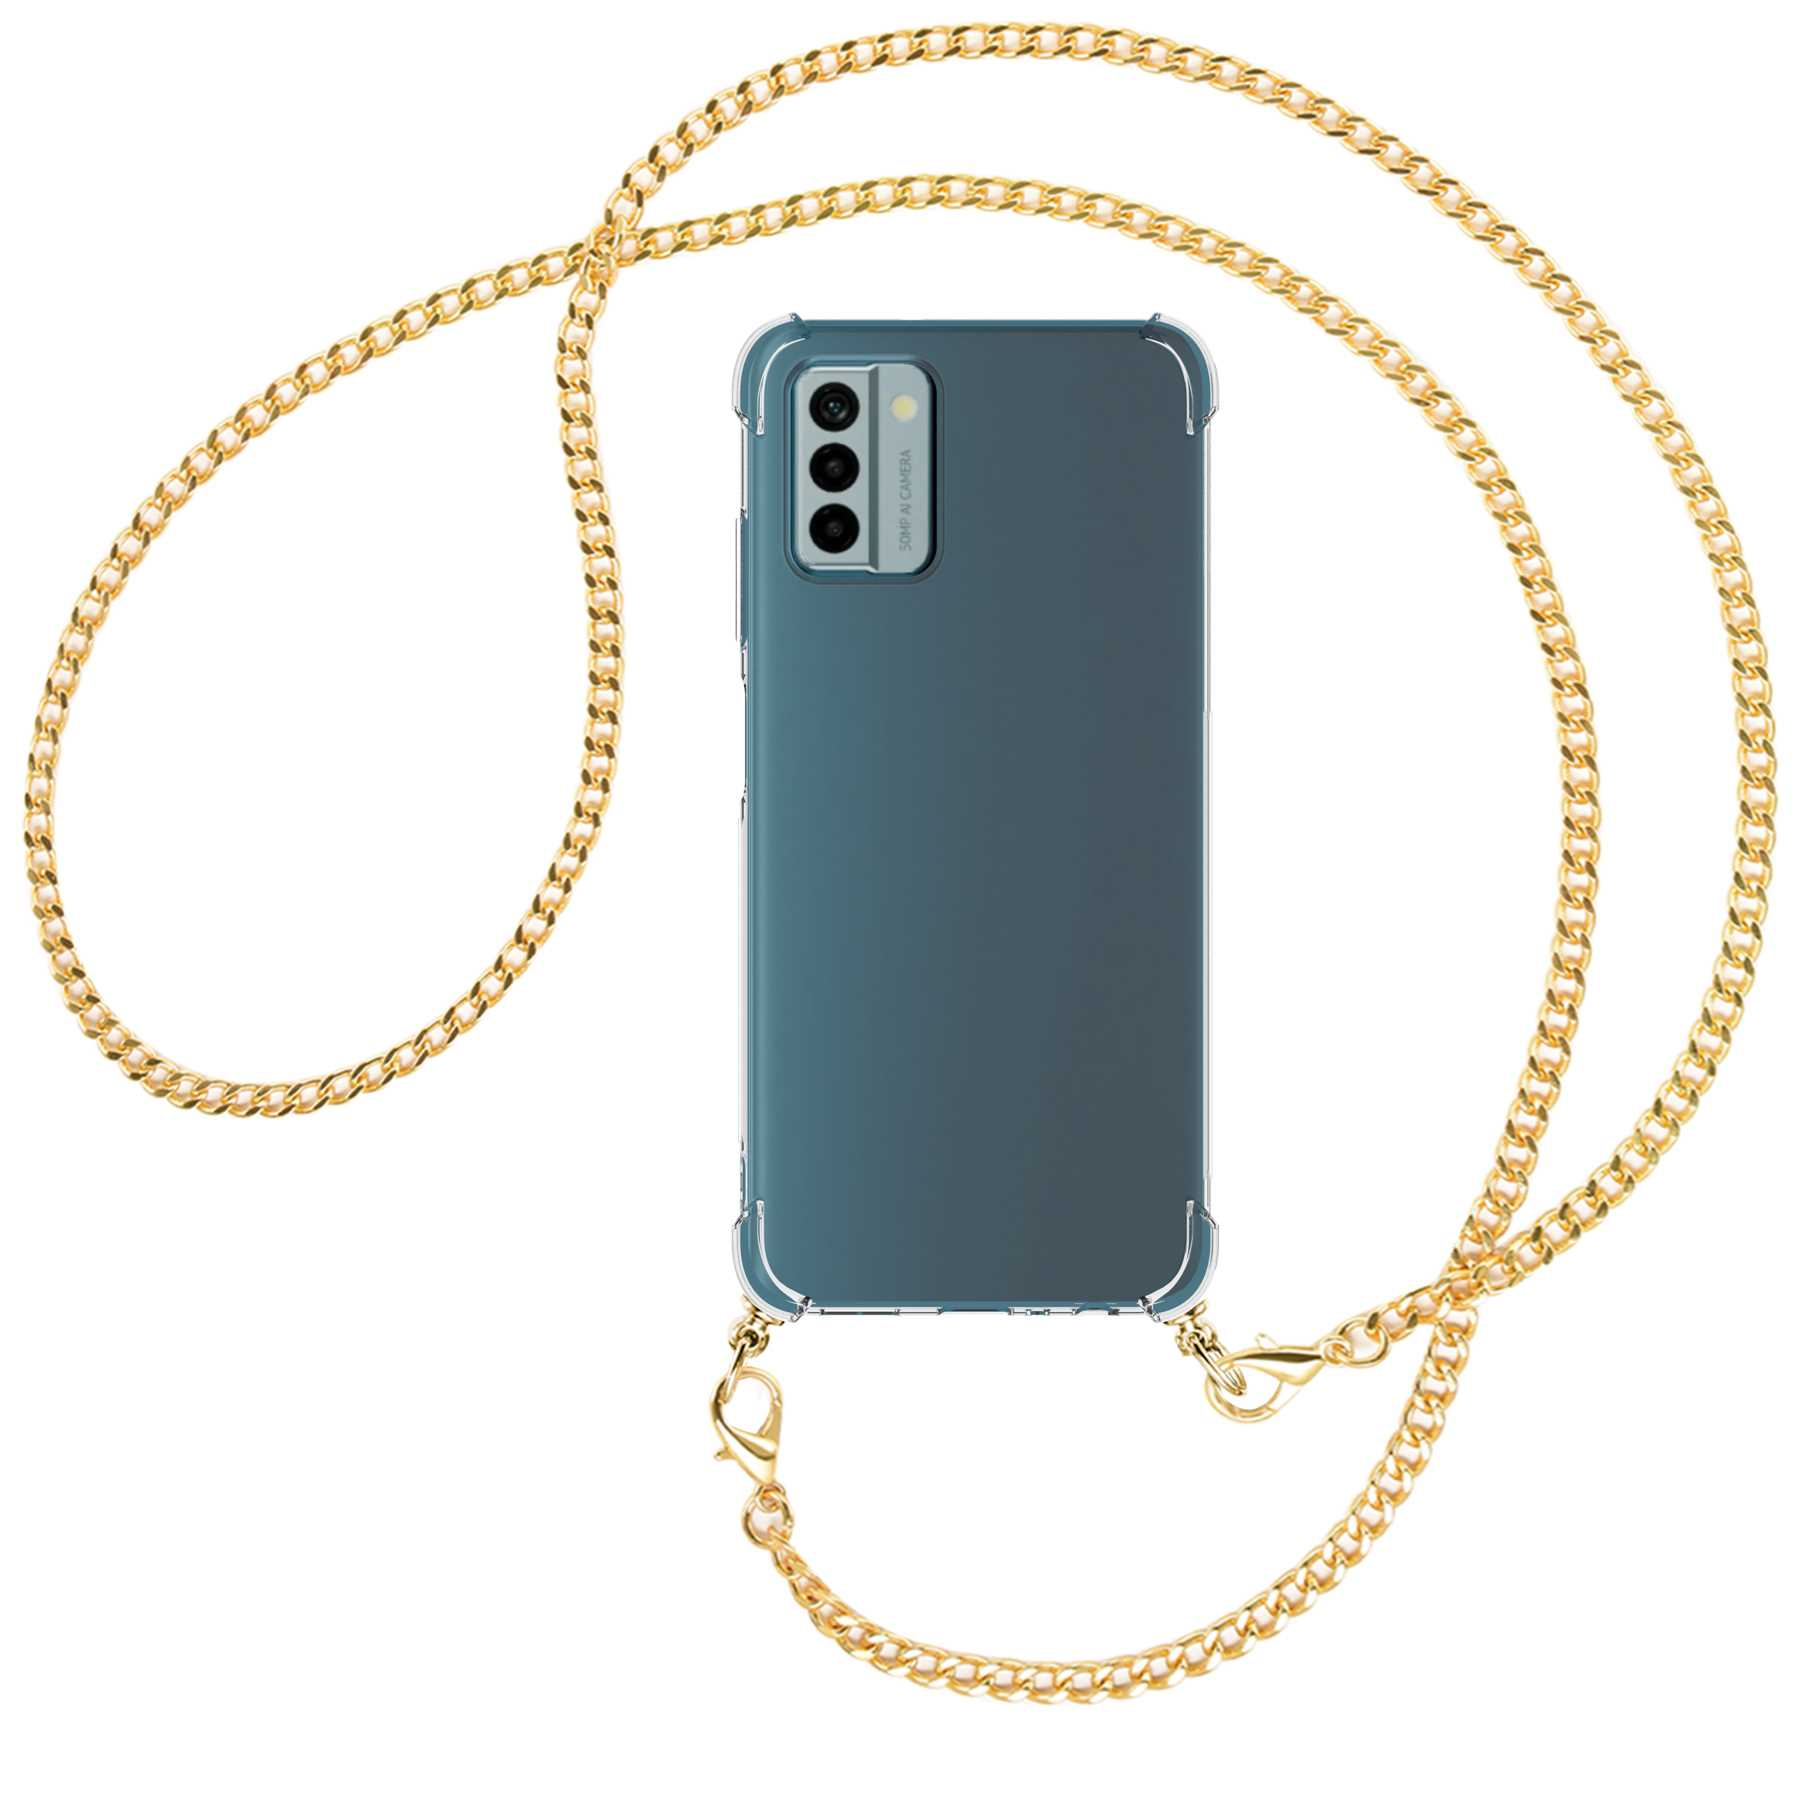 G22, mit Nokia, Umhänge-Hülle Metallkette, ENERGY Backcover, Kette MORE MTB (gold)